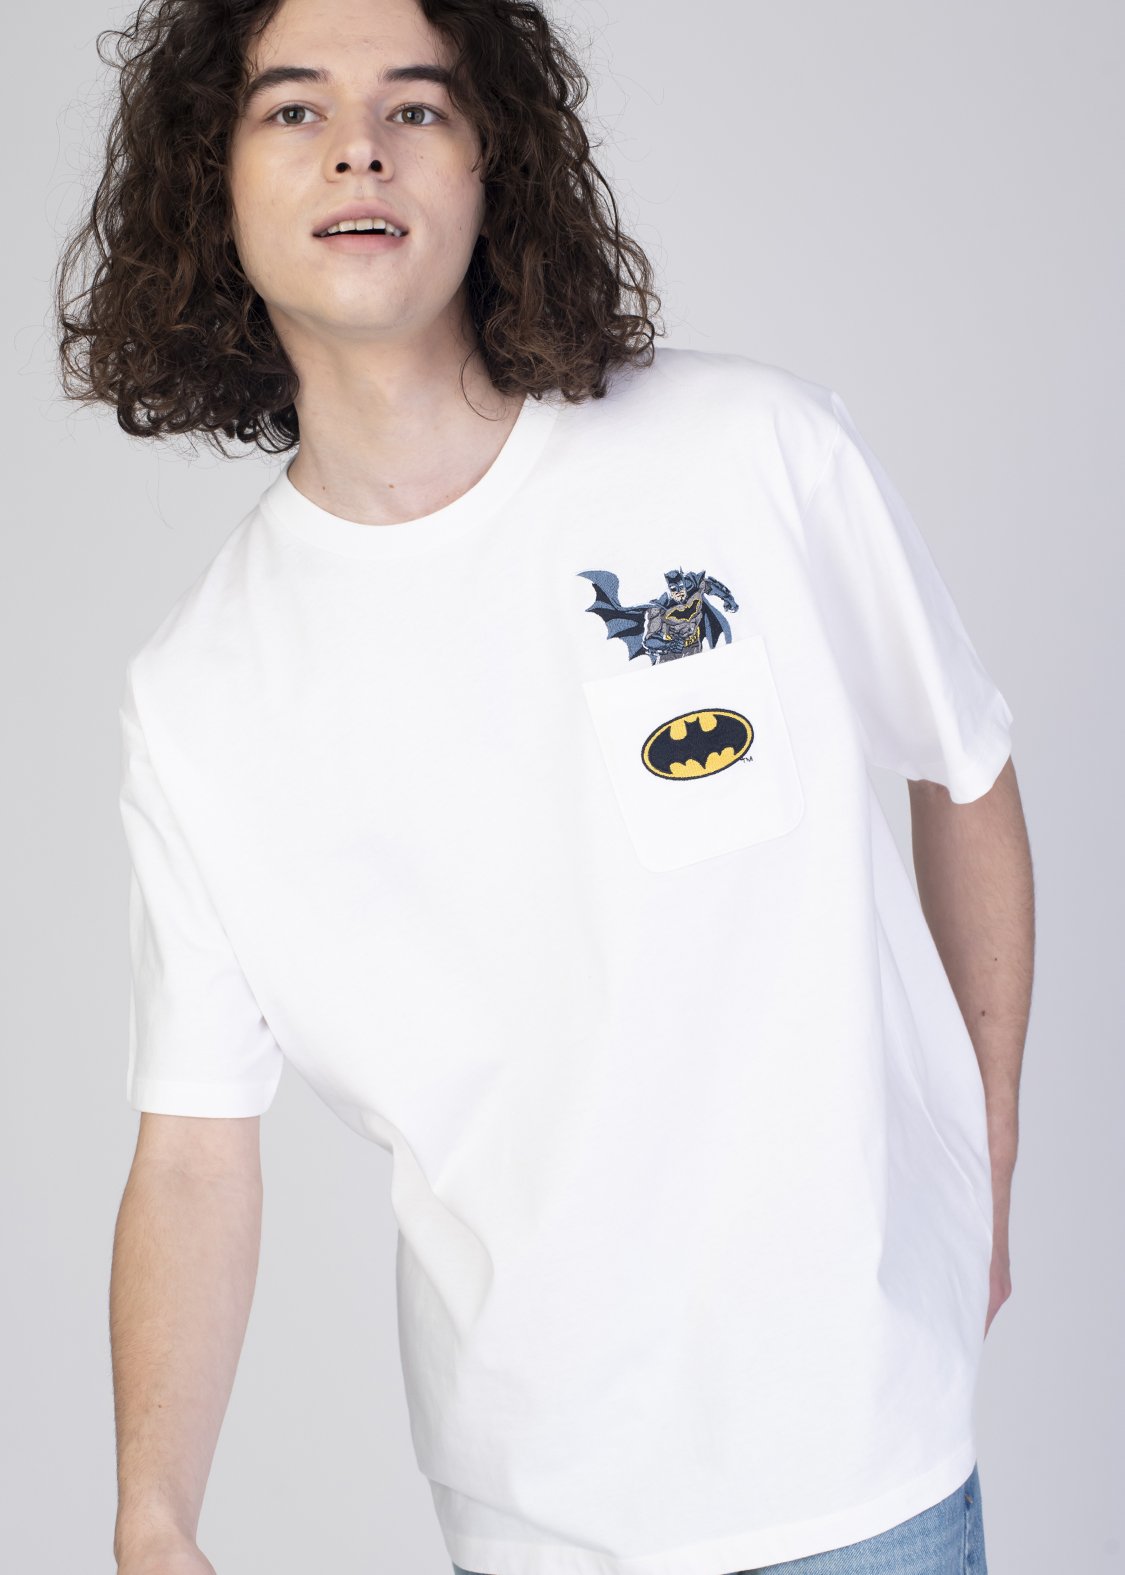 グラニフ「バットマン コラボレーション」 Tシャツ「バットマン エンブロイダリー」